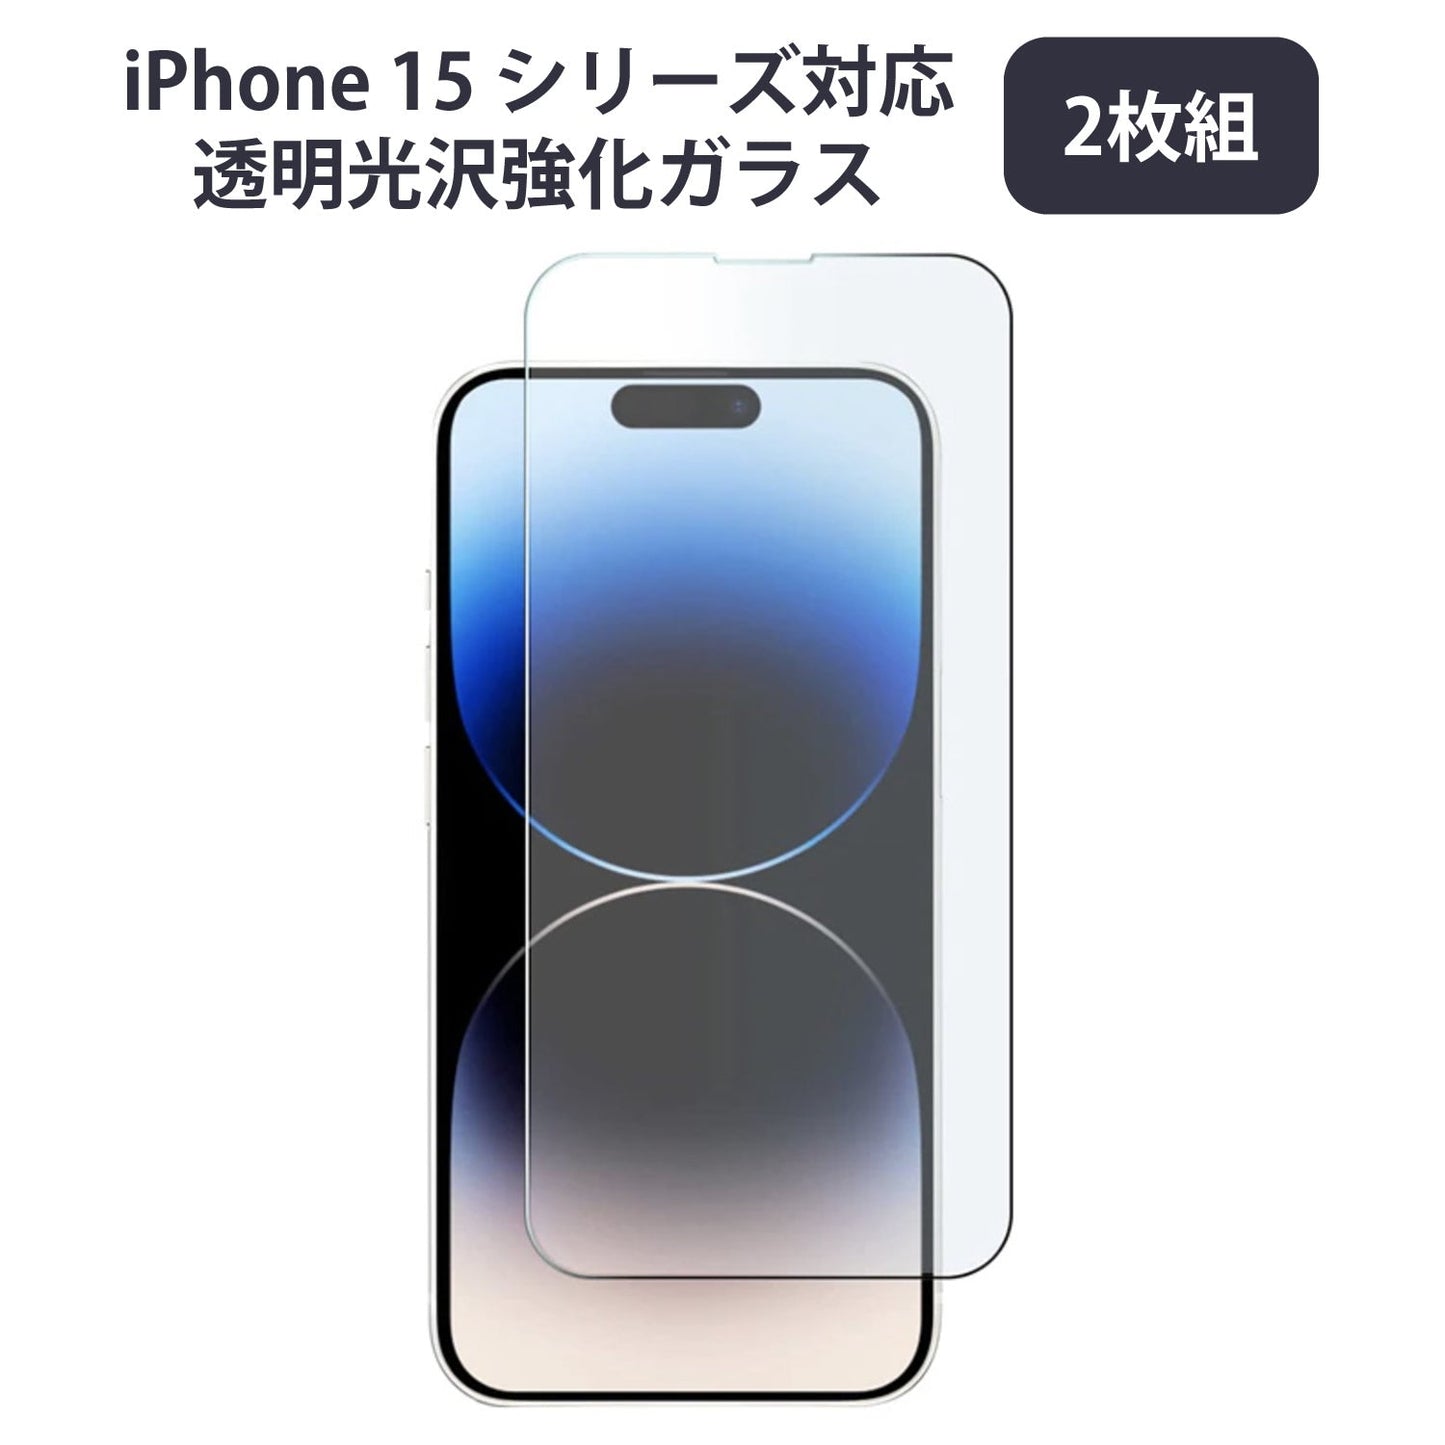 【2枚組】iPhone 15 シリーズ対応 透明光沢強化ガラス iPhone 14/13/12 Pro Max mini Plus 7/8/SE2/SE3